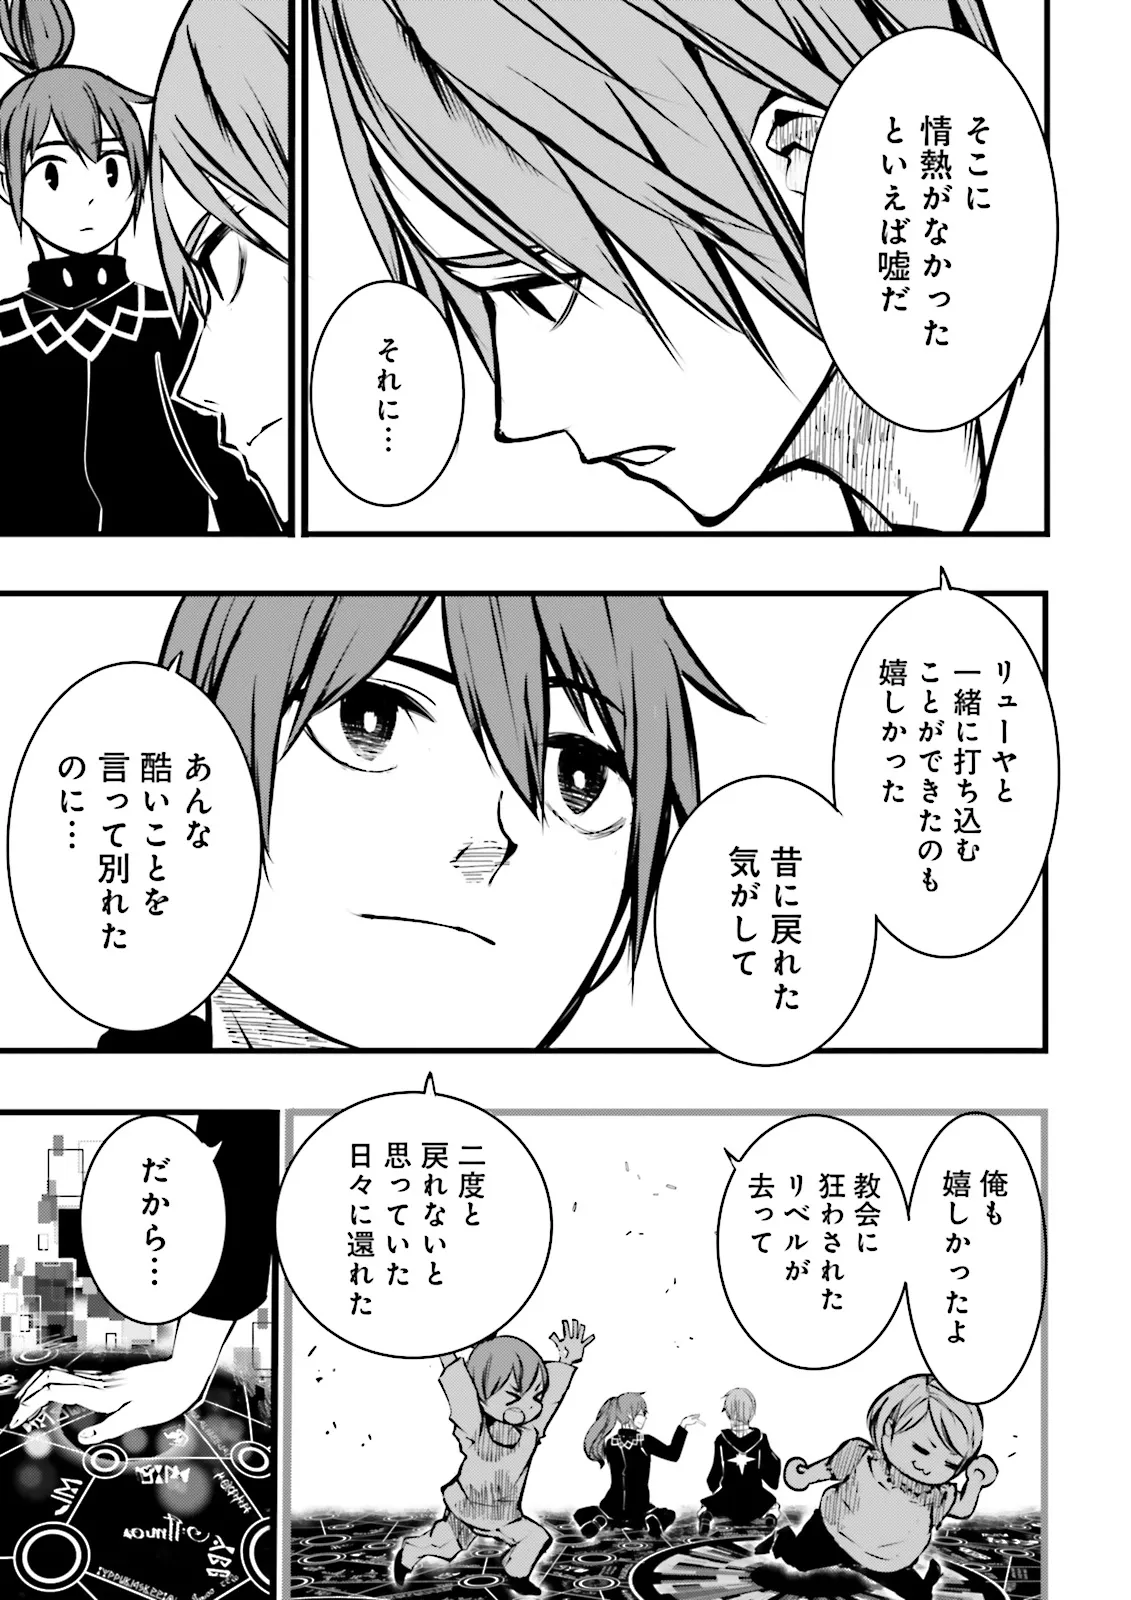 Sukiru Ga Nakereba Level wo Ageru ~ 99 Ga Kansuto No Sekai De Reberu 800 Man Kara Sutato ~ - Chapter 41.2 - Page 1